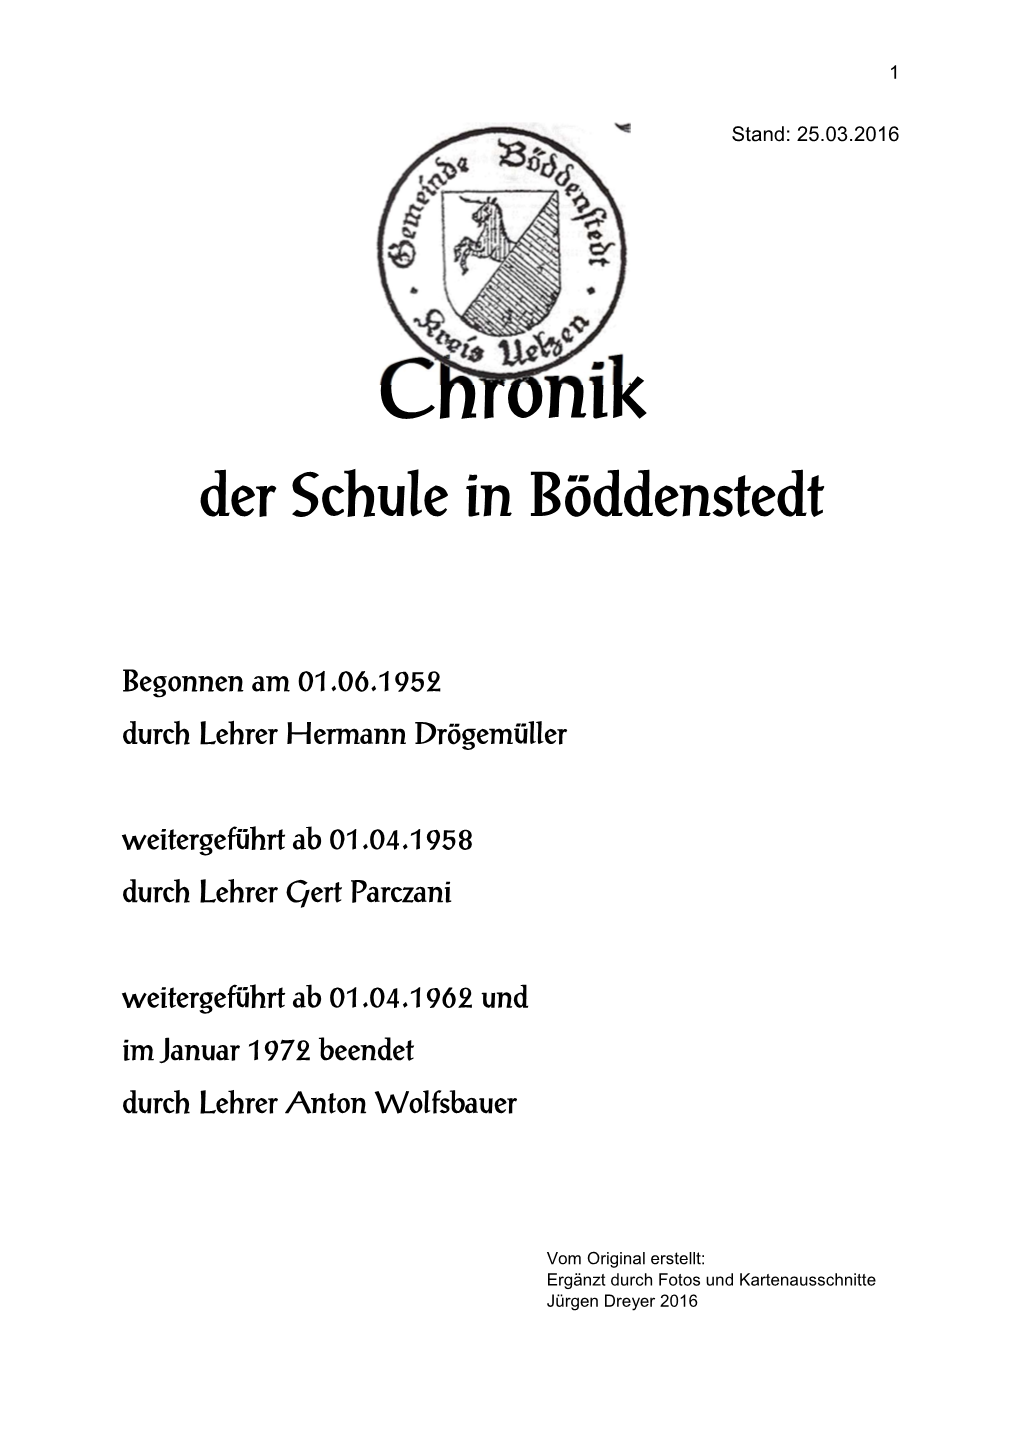 1952 Chronik Der Schule